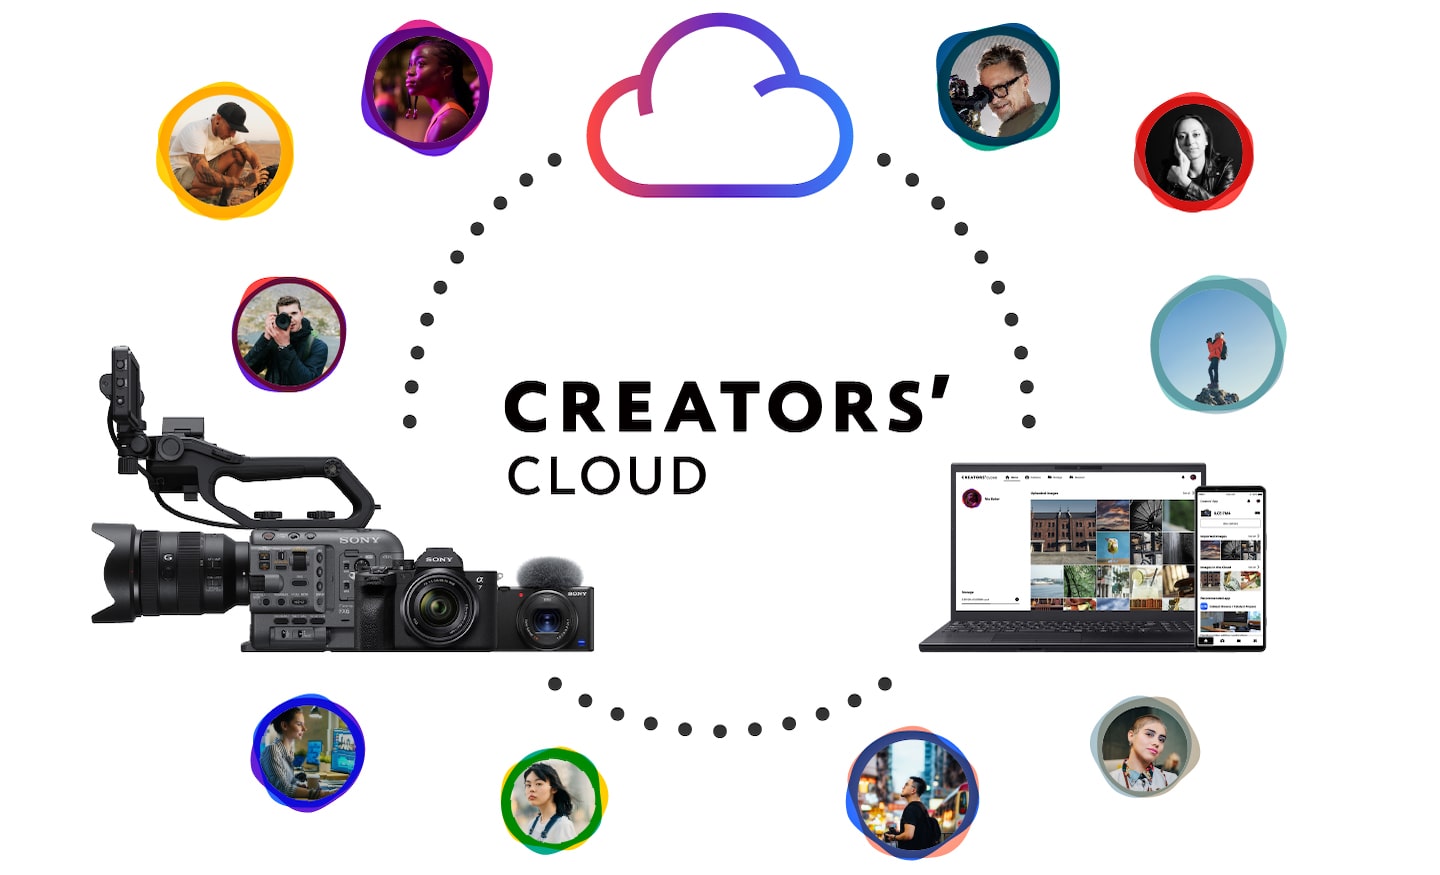 איור המציג את העולם של Creator’s Cloud. הענן, המצלמות וגם תהליך העריכה צגים וטלפונים חכמים המציגים תהליכי עיבוד קשורים זה בזה. מסביבם מוצגים יוצרים שונים.